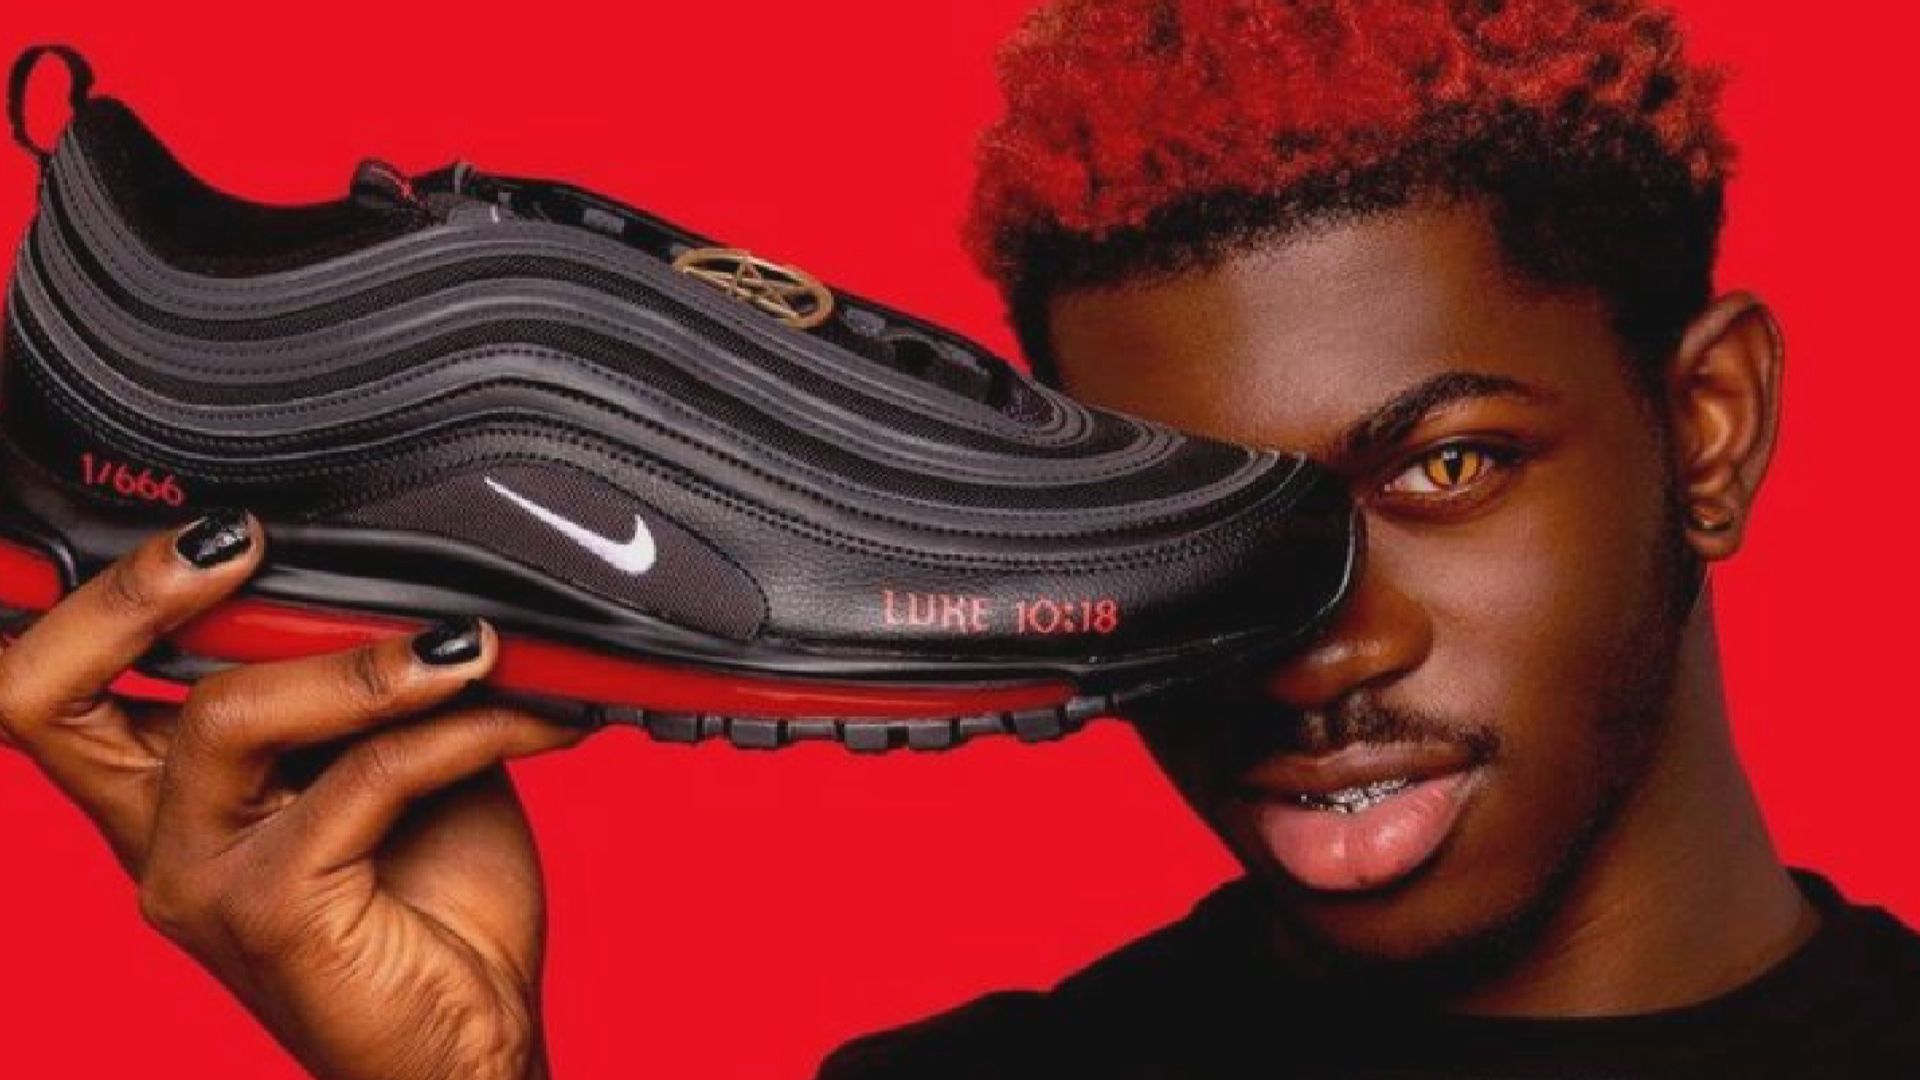 【環球薈報】美饒舌歌手改造Nike波鞋出售惹爭議